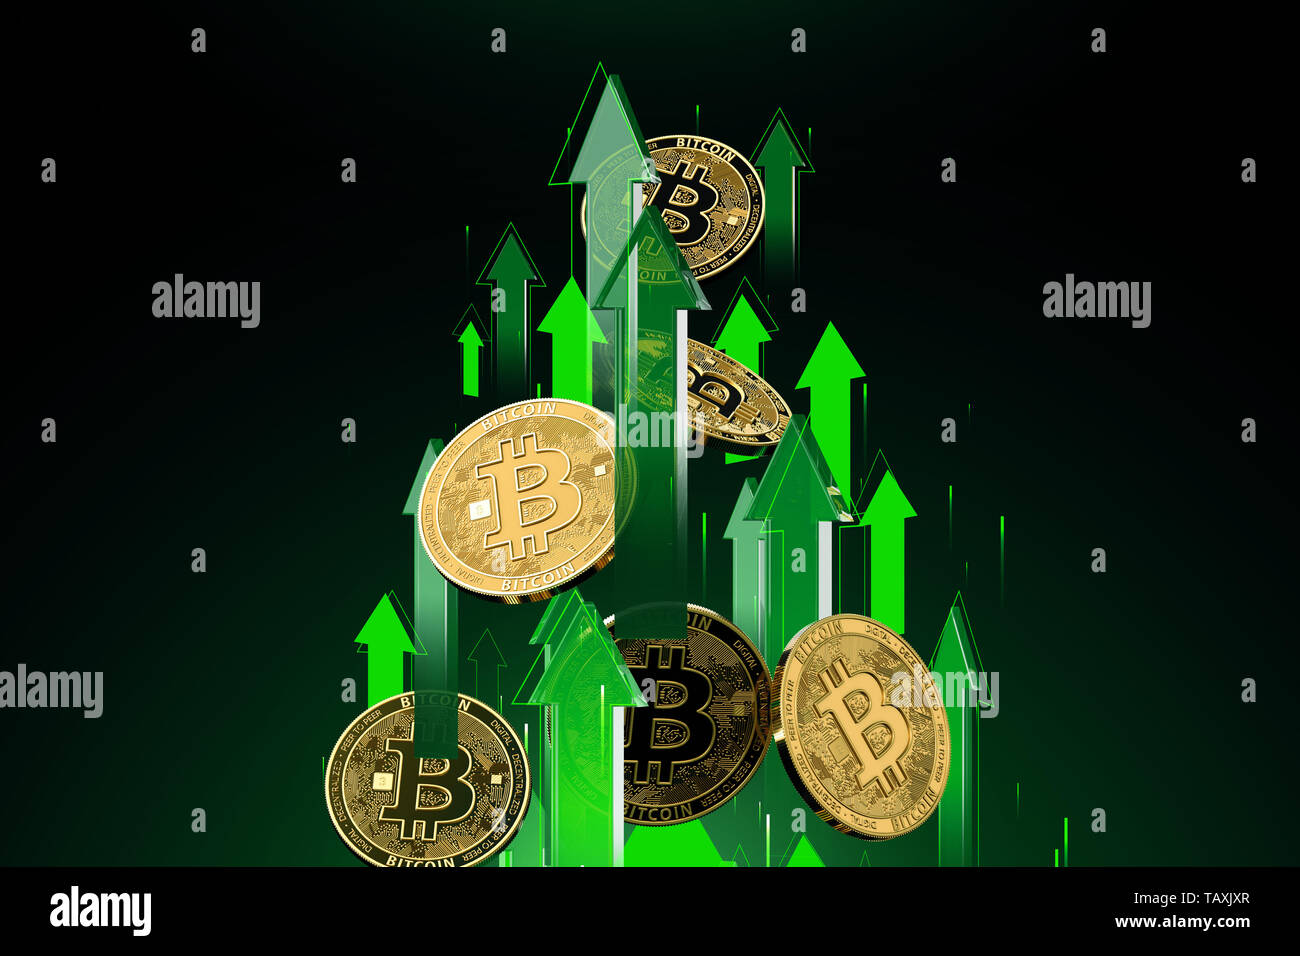 Grüne Pfeile Aufnahmen mit hoher Geschwindigkeit wie Bitcoin (BTC) Preis steigt. Cryptocurrency Preise wachsen, hohes Risiko - hohe Gewinne Konzept. 3D-Rendering Stockfoto